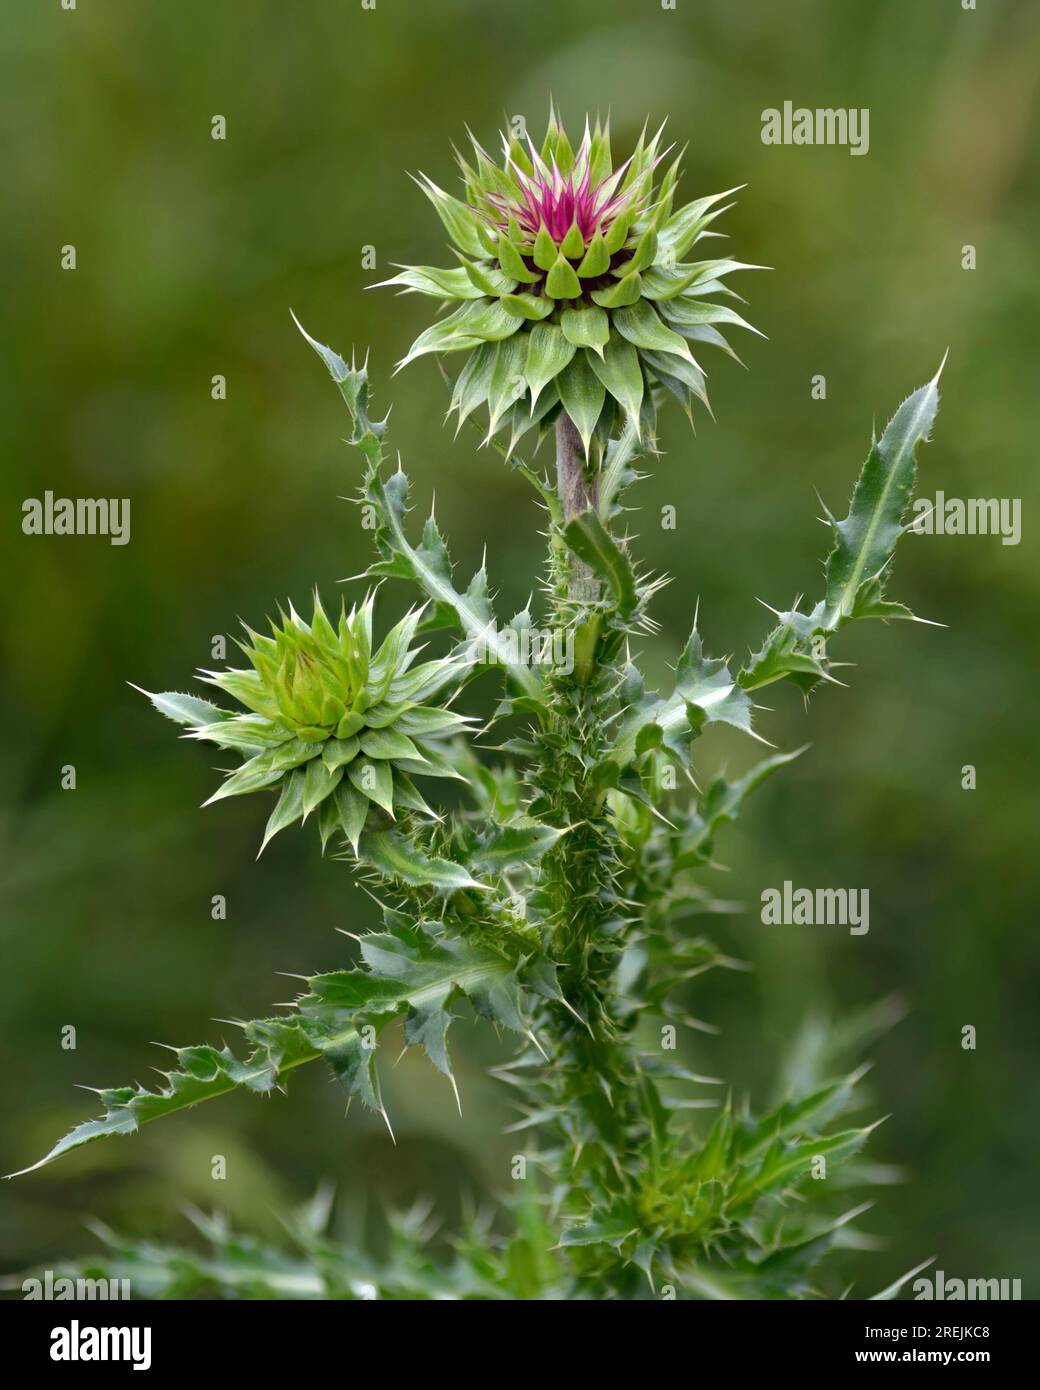 Cardo con la cabeza (Carduus nutans), una hierba invasiva, también conocida como cardo almizclero fotografiado sobre un fondo verde suave. Flor nacional de Escocia. Foto de stock